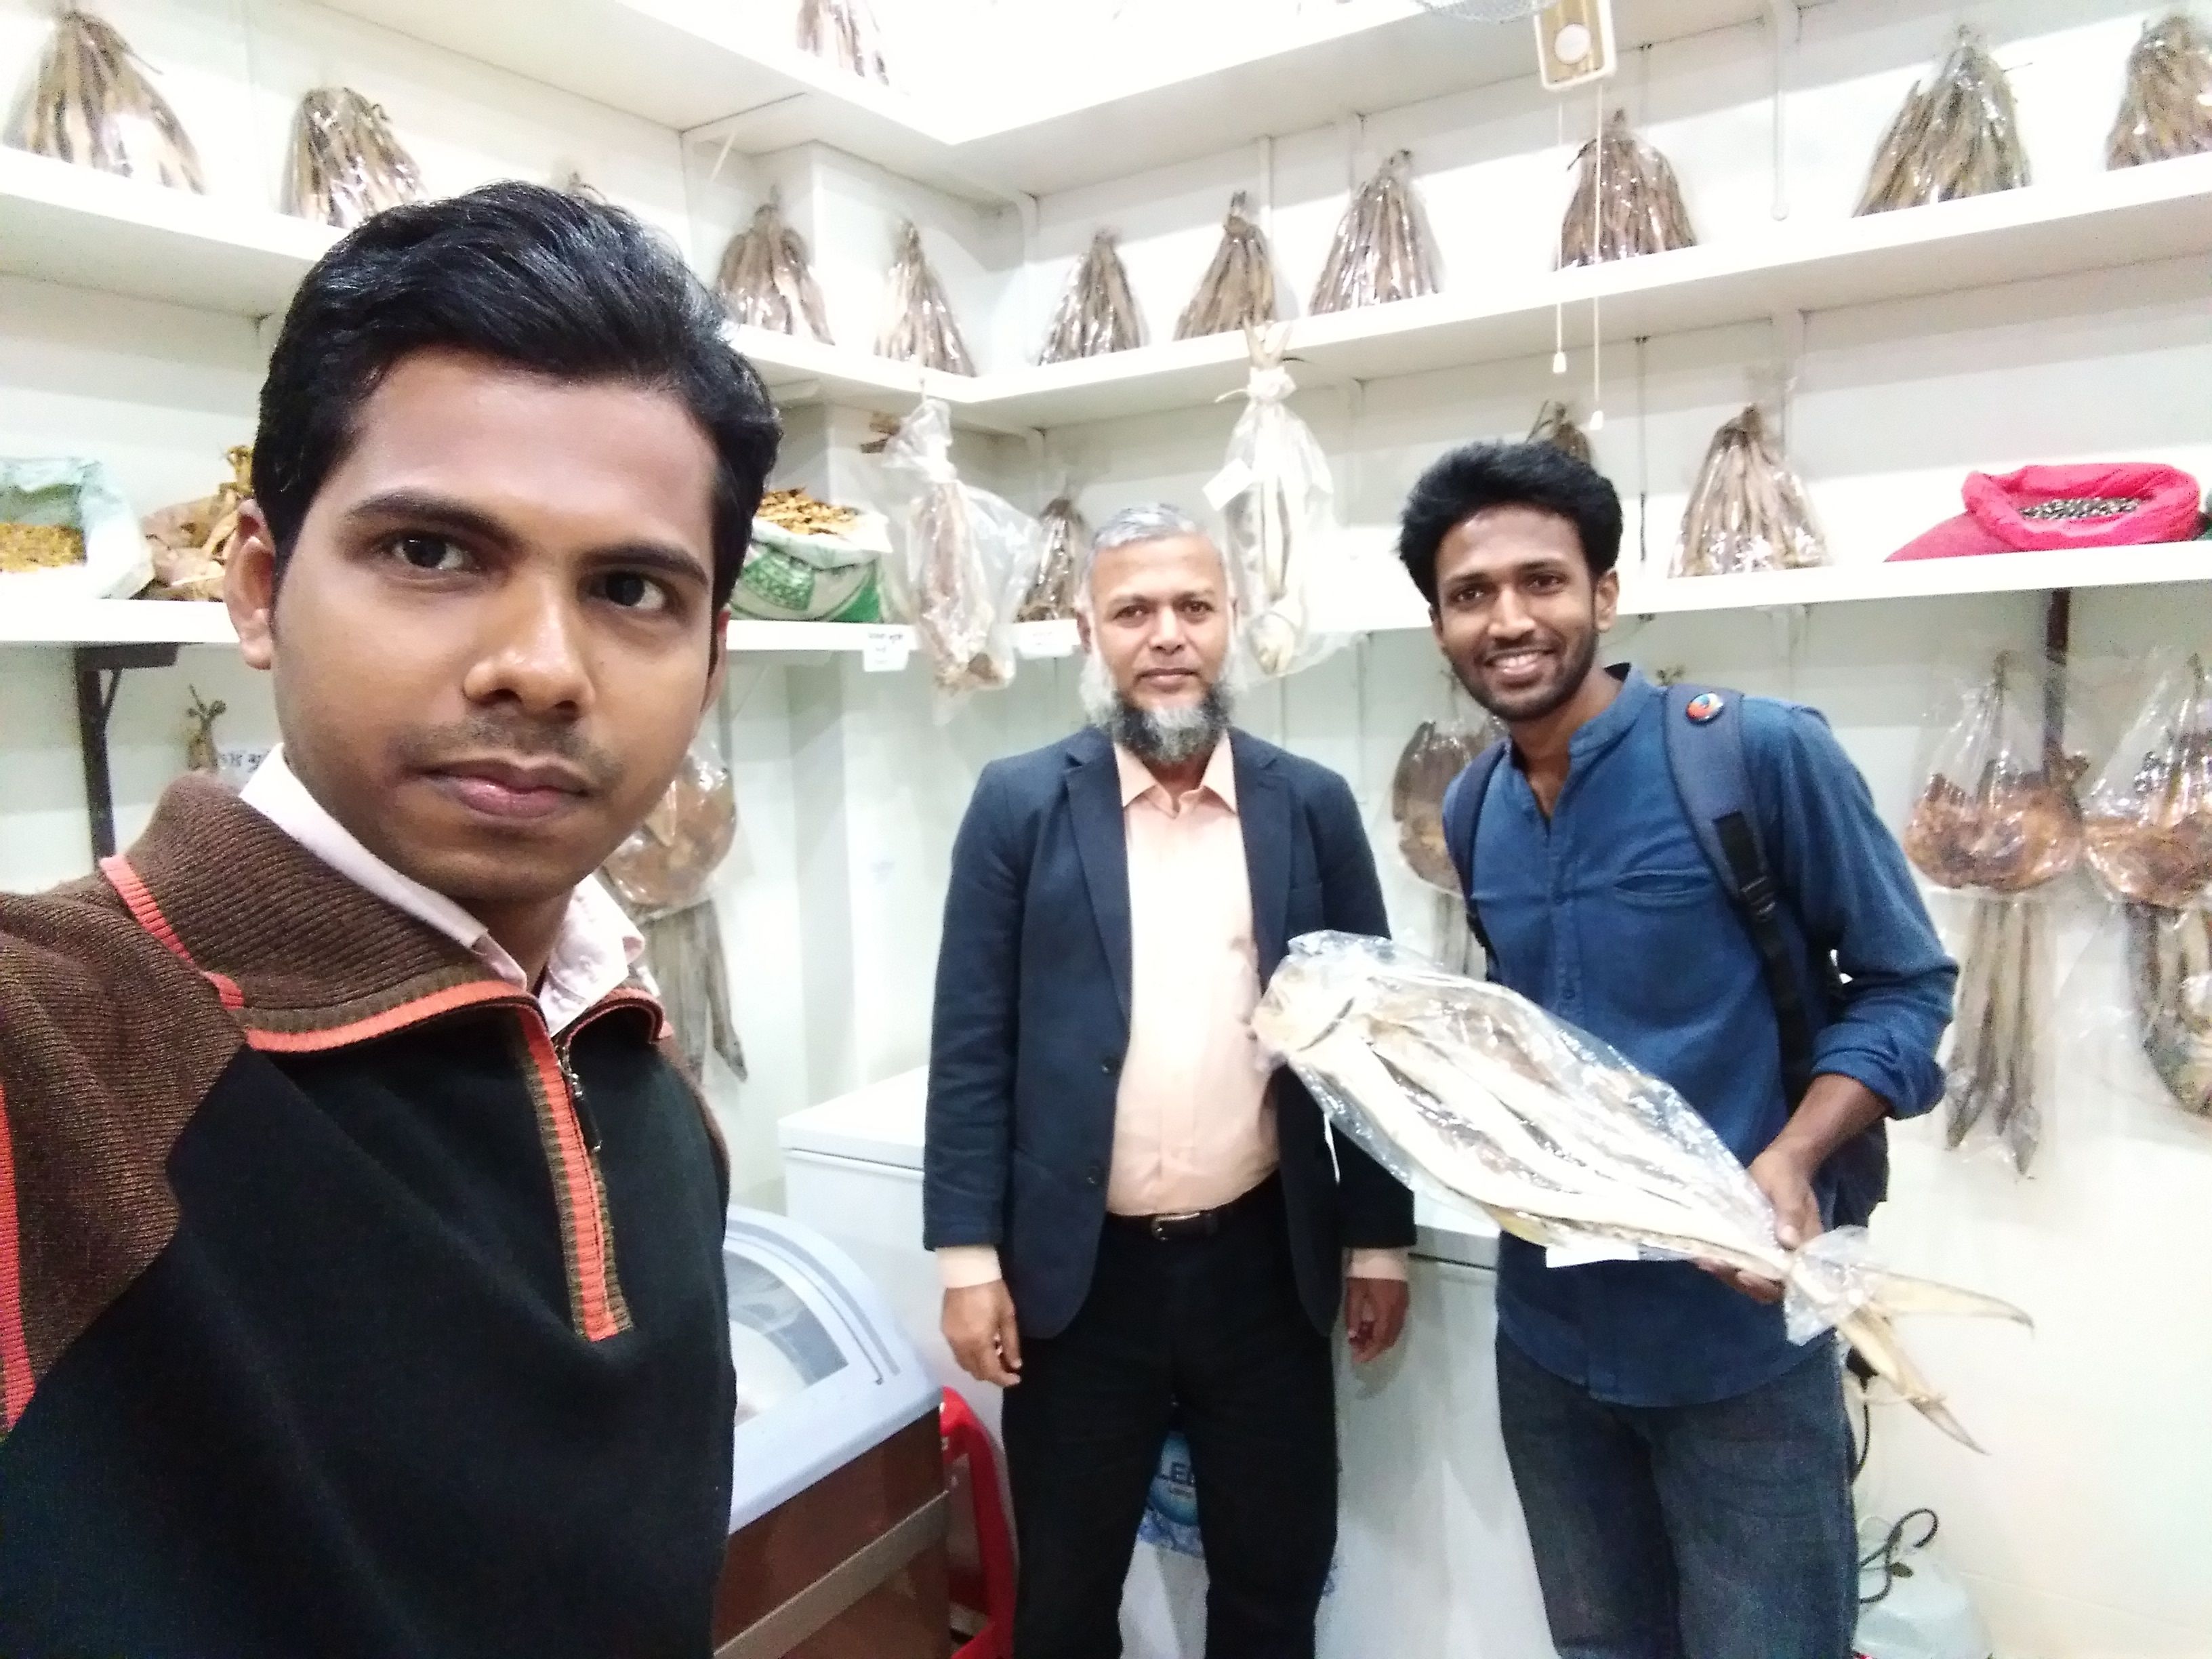 A meetup photo (Sea fish shop) at Dhaka in Bangladesh